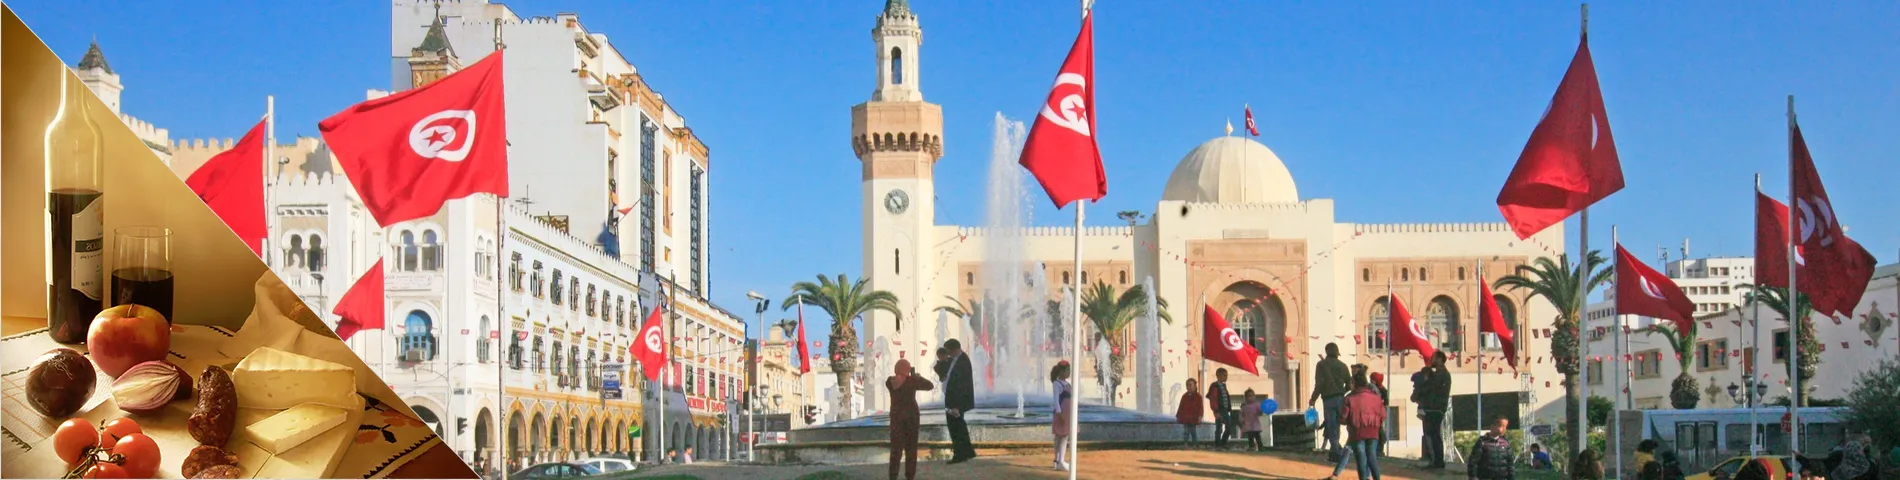 Sfax - Arabo & Cultura